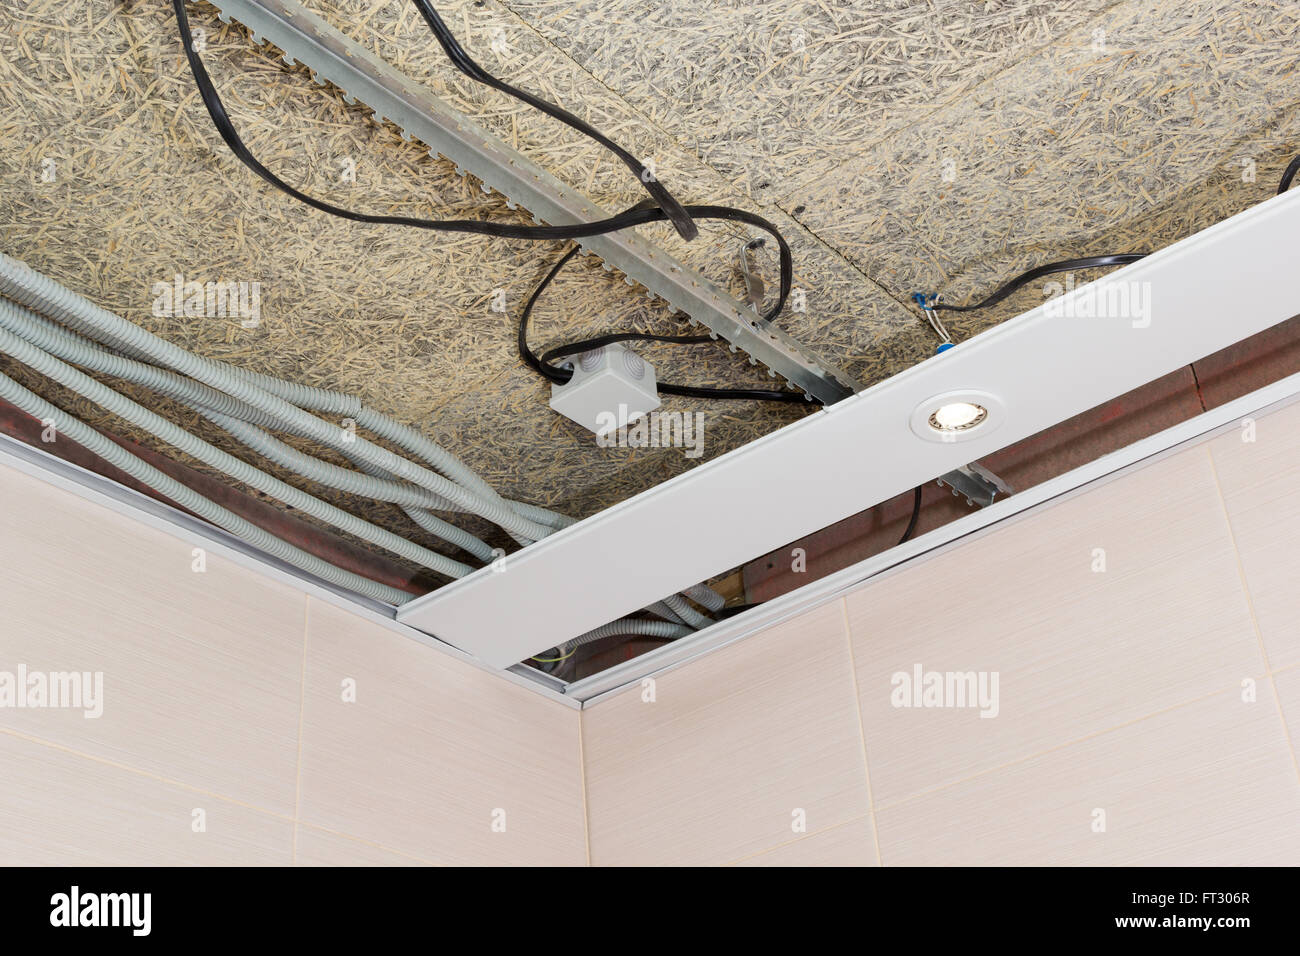 Tapis de plafonds suspendus et câblage électrique Banque D'Images